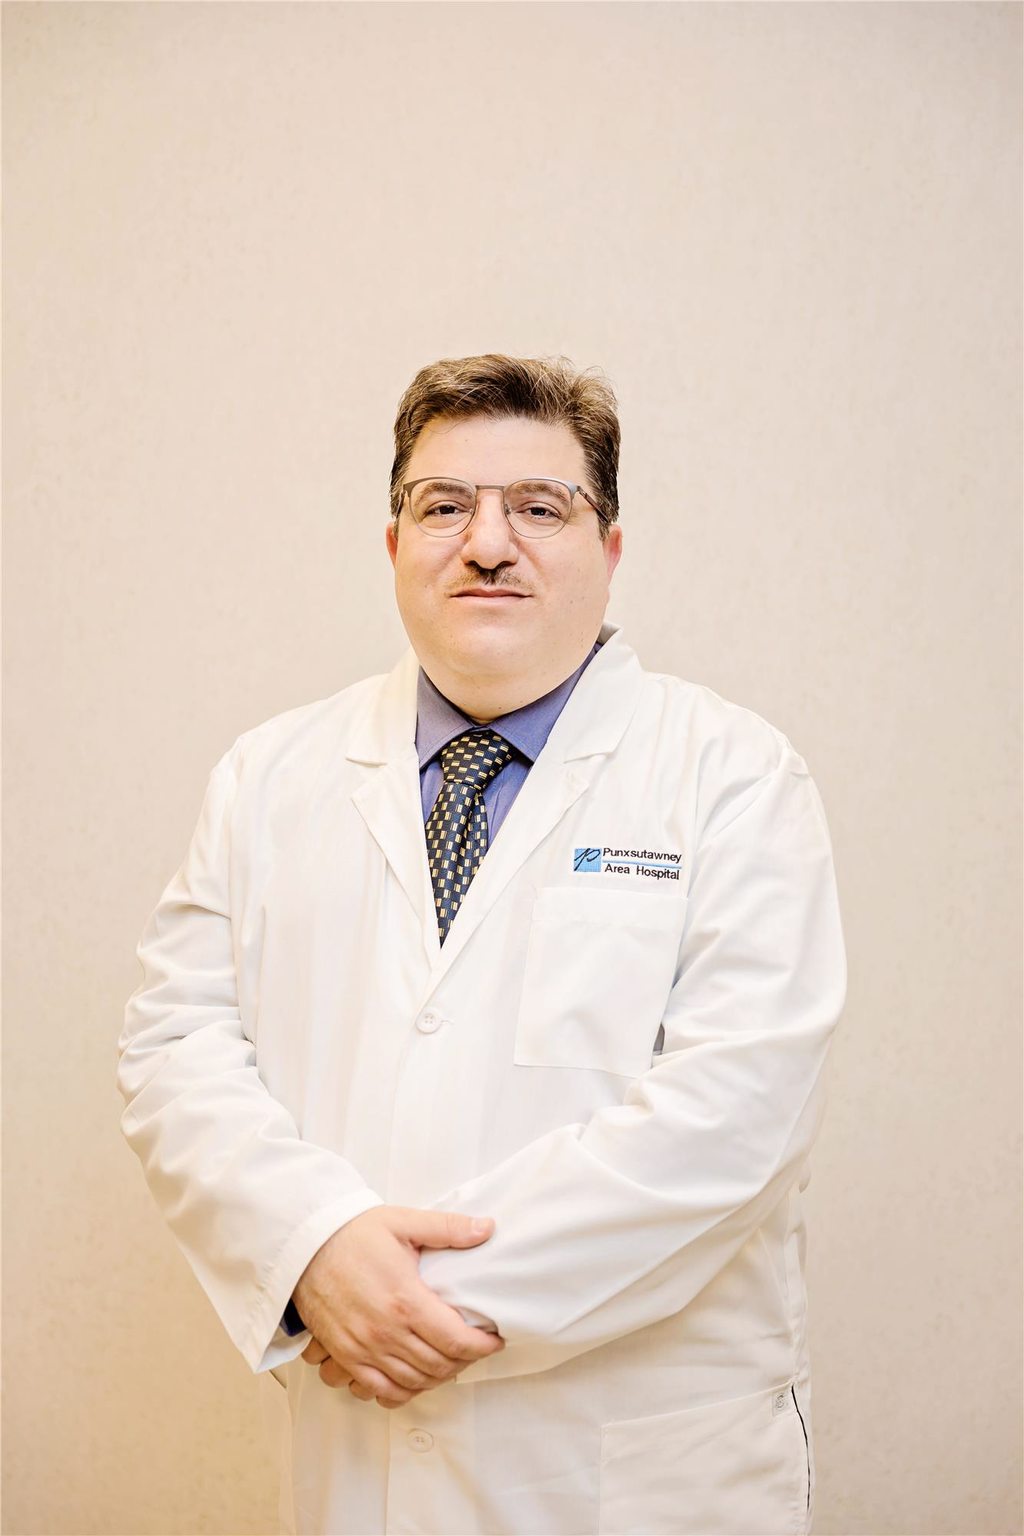 Dr. Khabbaz